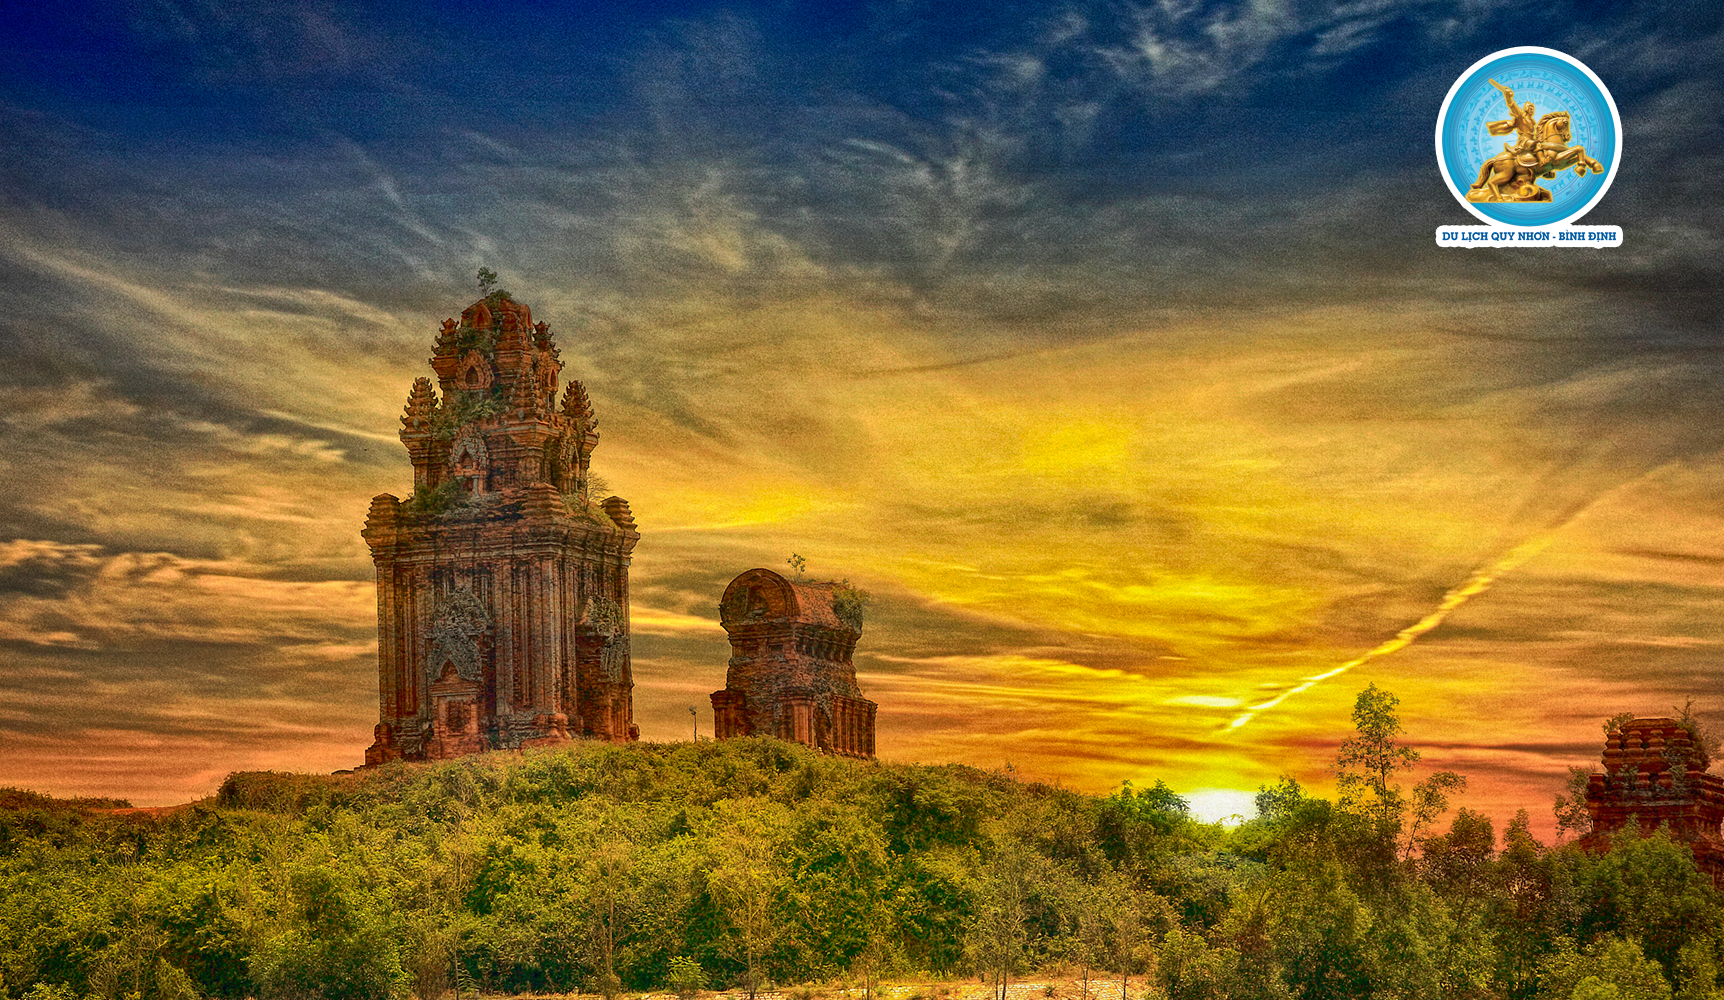 Tháp Bánh Ít -  Đẹp kỳ vĩ kiến trúc Chăm pa cổ